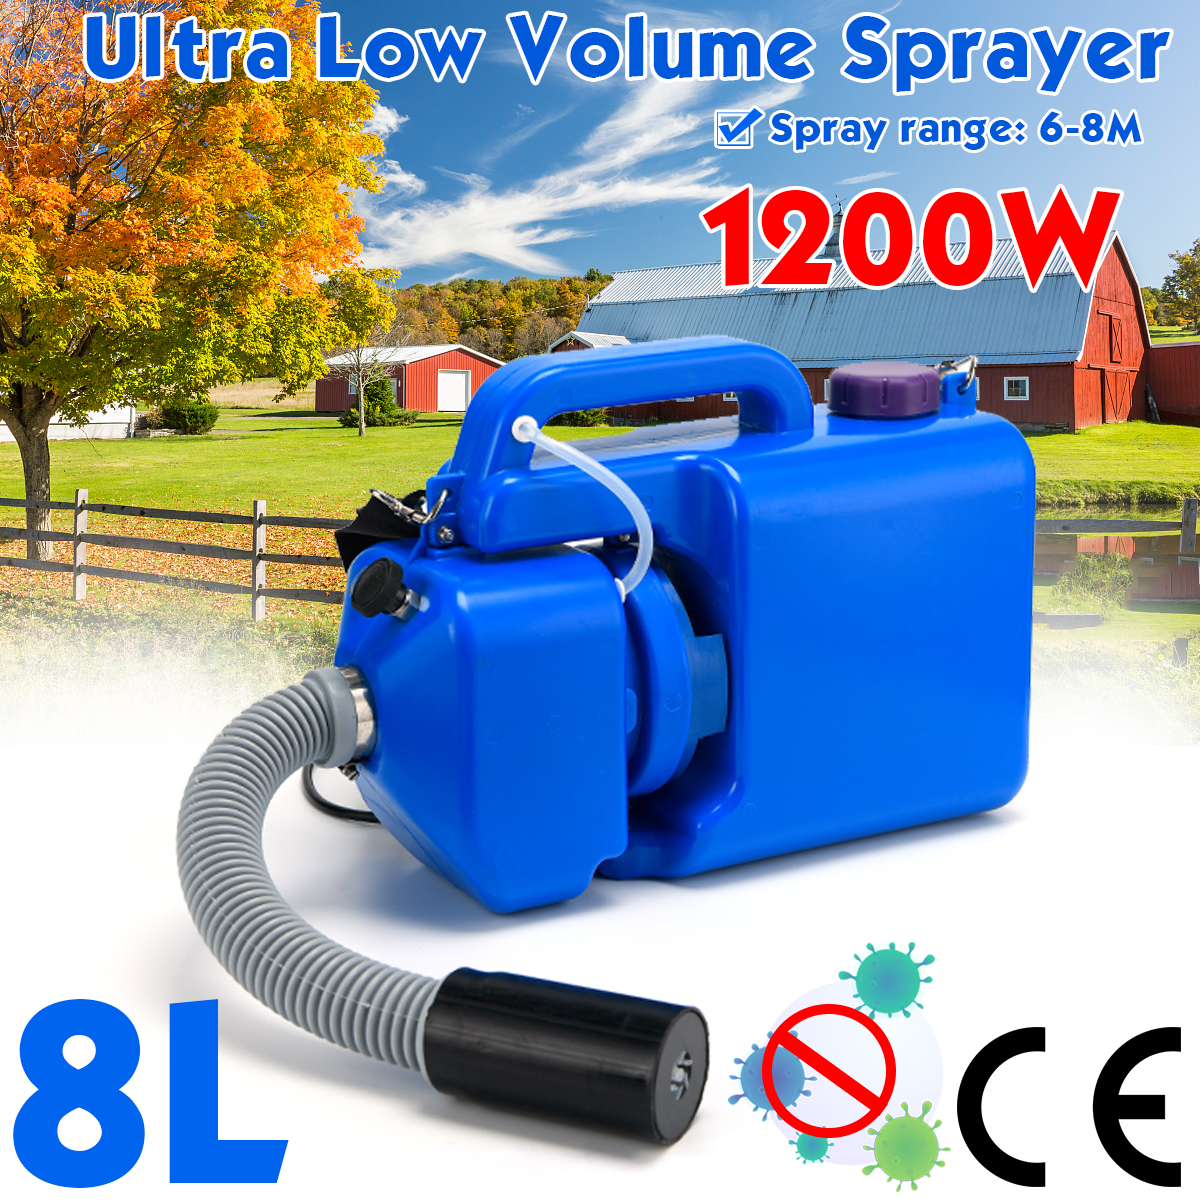 1200W-8L-Portable-Nebulizer-Sprayer-Hotels-Residence-Community-Office-Disinfection-Sterilization-CE-1704935-1